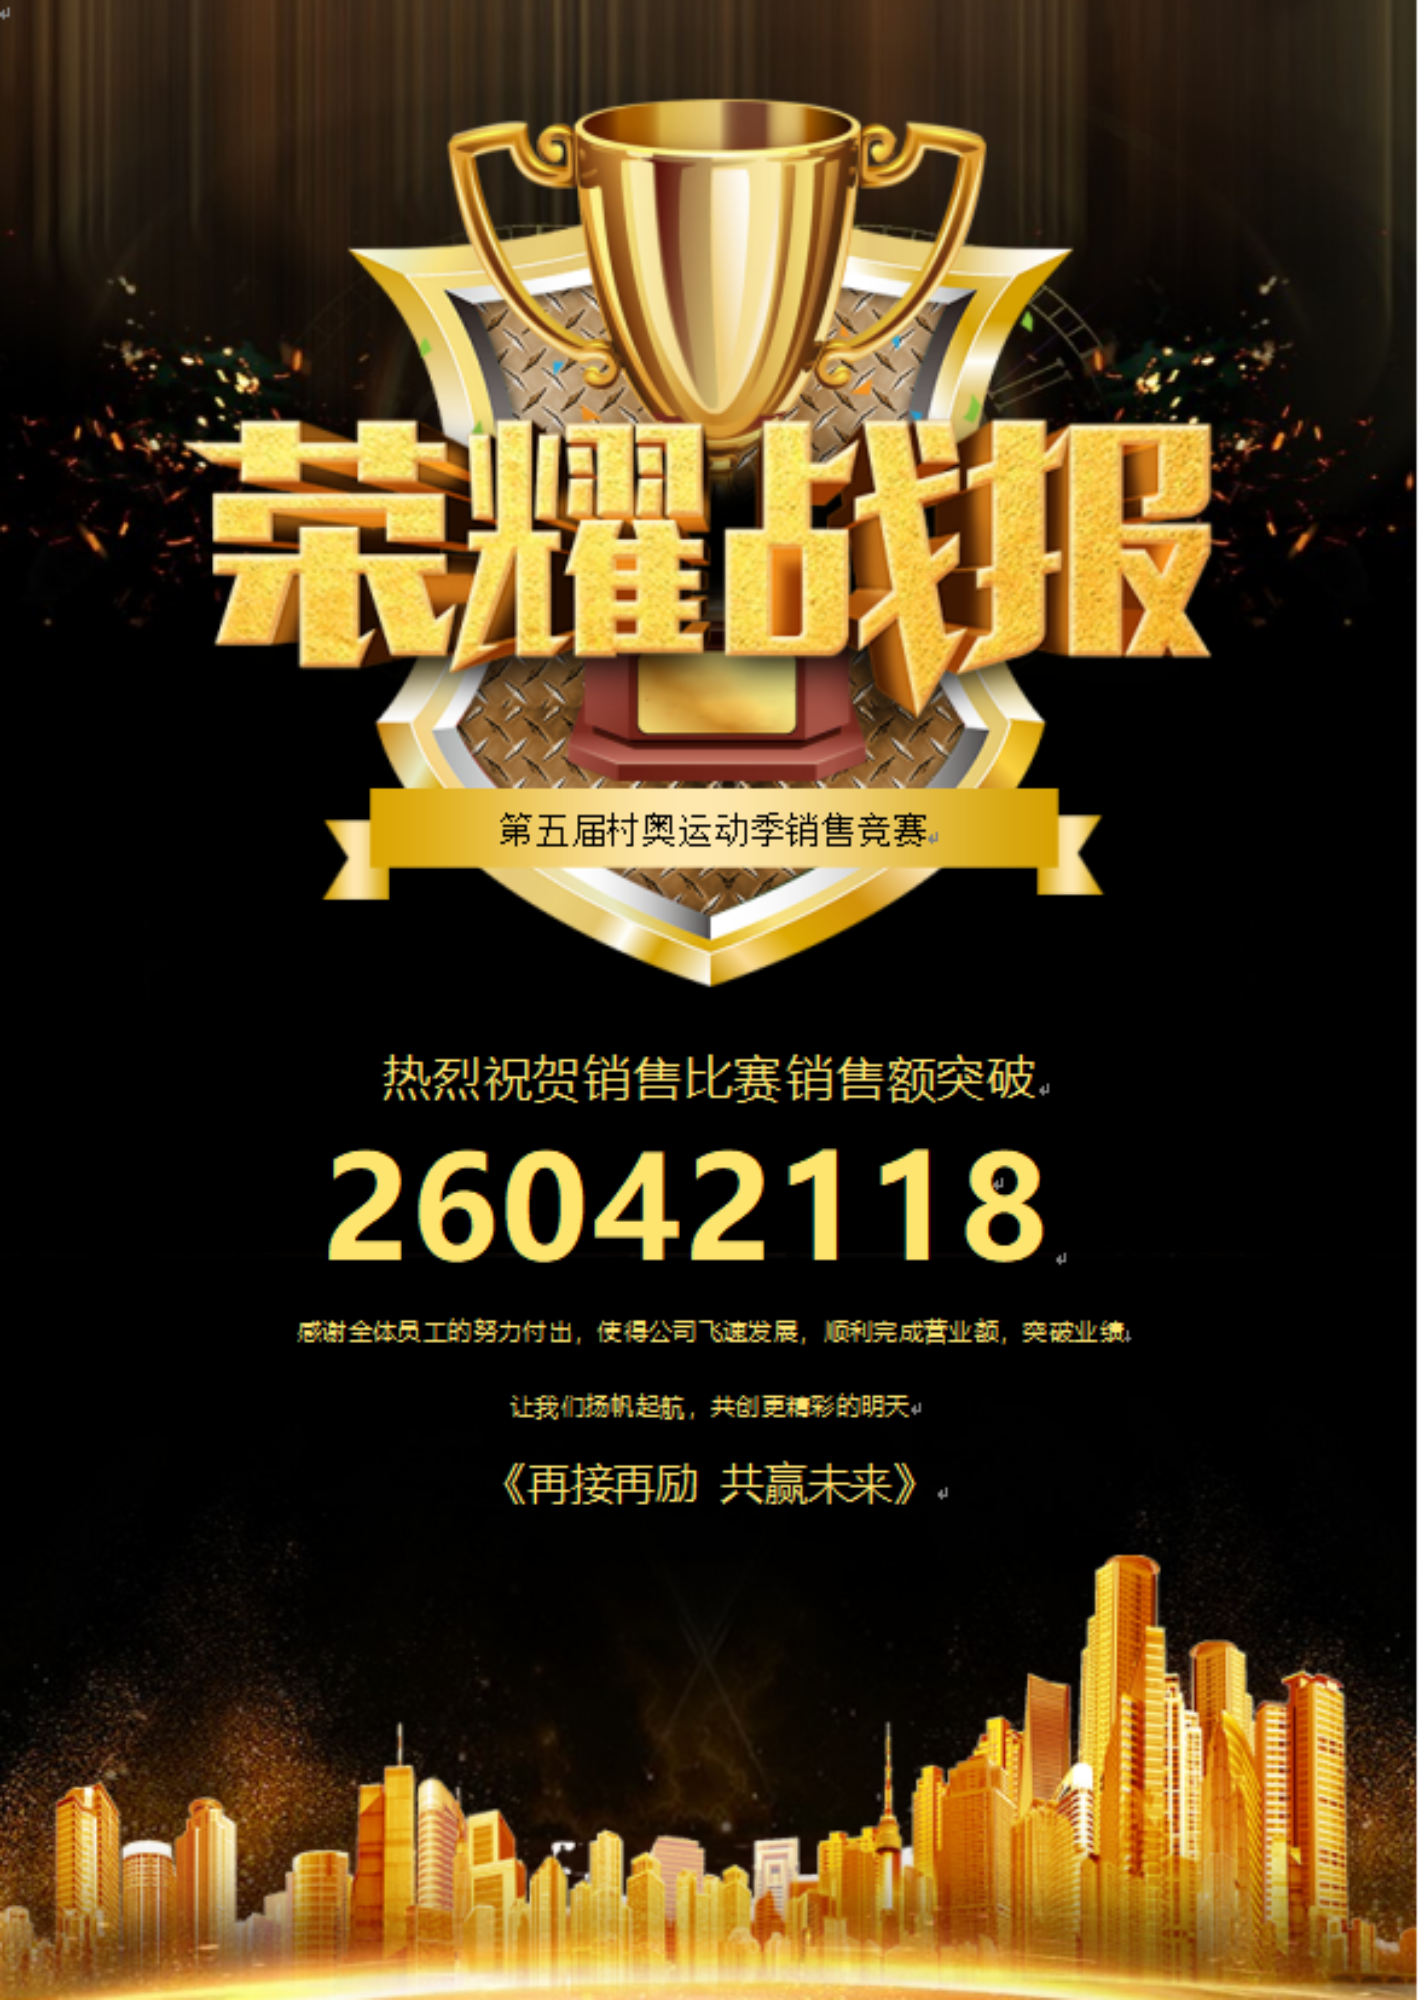 ROEASY përmbush performancën e shitjes 26042118 RMB gjatë garës së ekipit ROEASY gjatë 45 ditëve të fundit